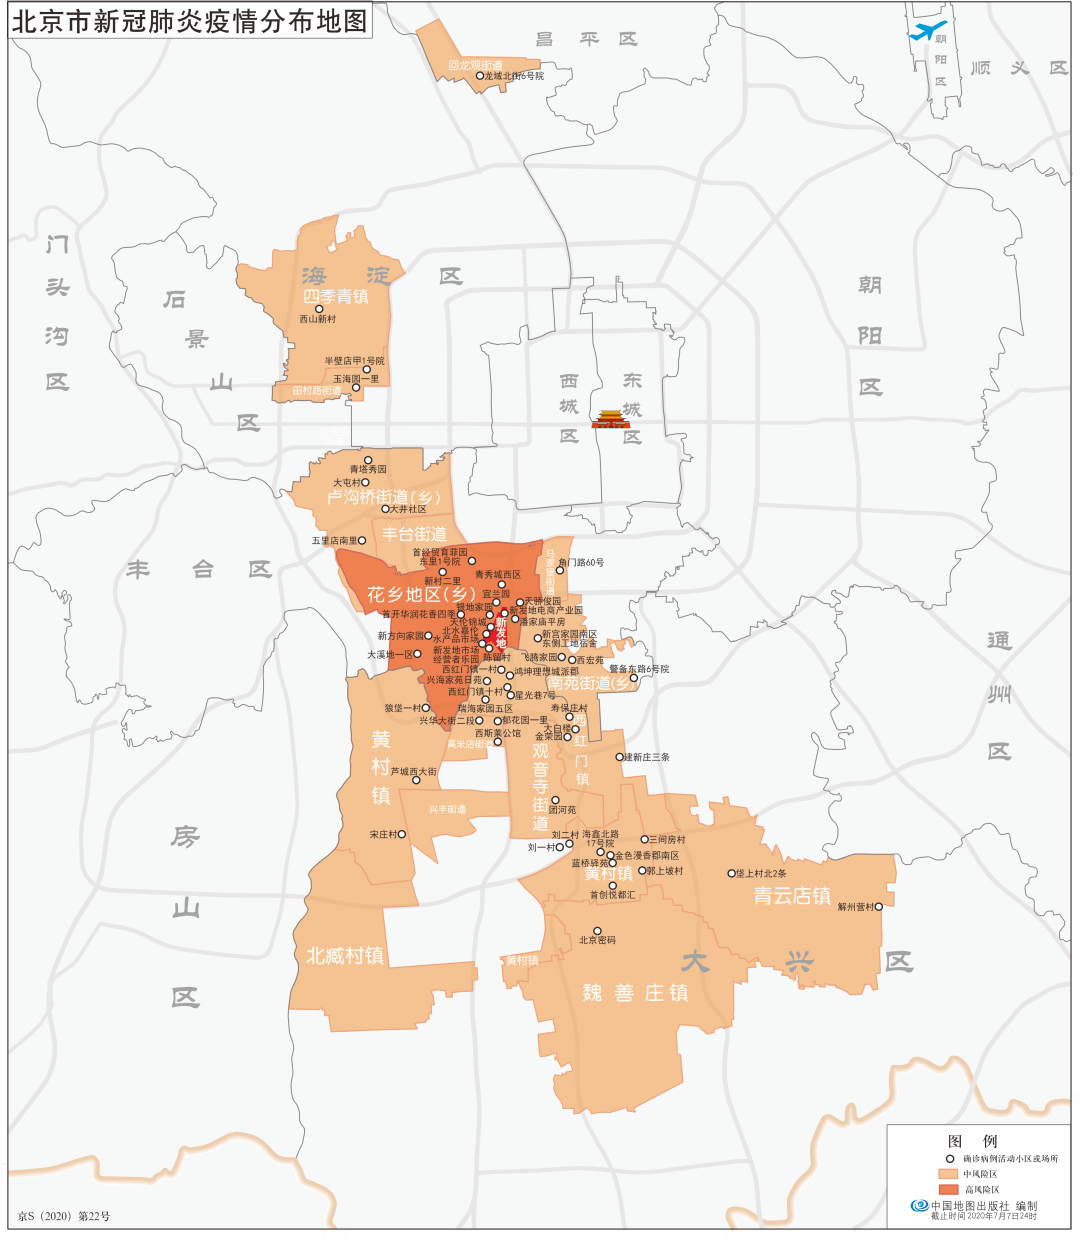 北京市疫情分布情况图图片